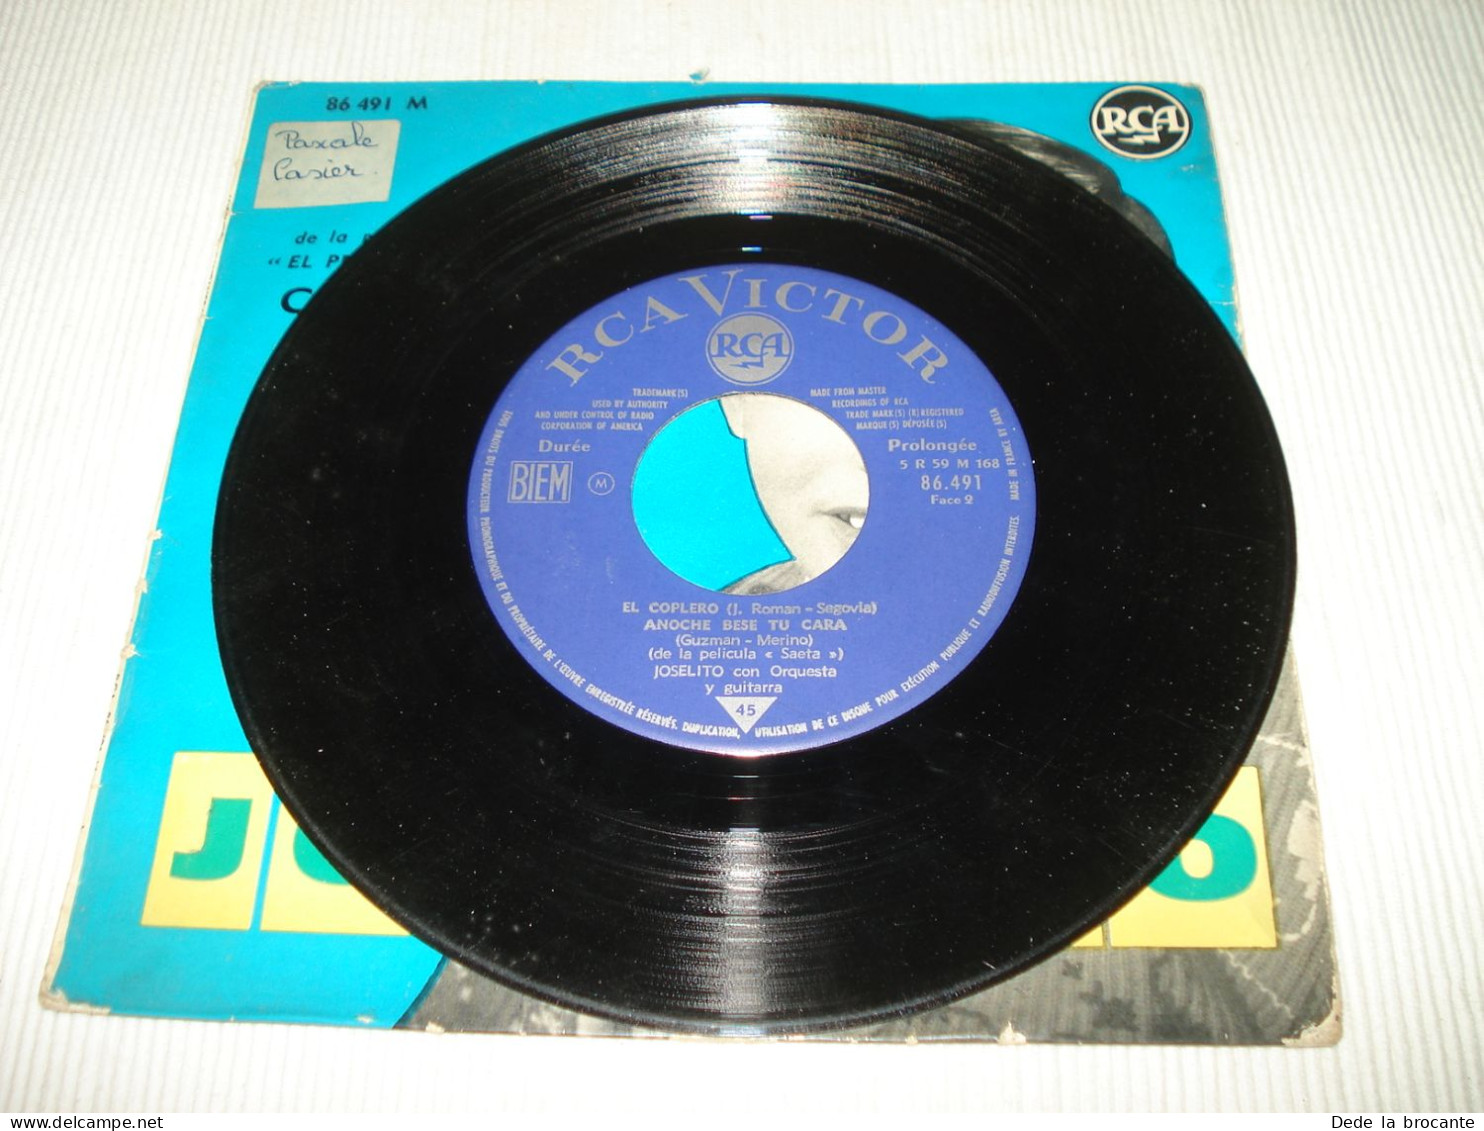 B12 / Joselito – Musique Film Campanera – EP - RCA – 86.491 - FR 1963 -  EX/VG+ - Filmmuziek